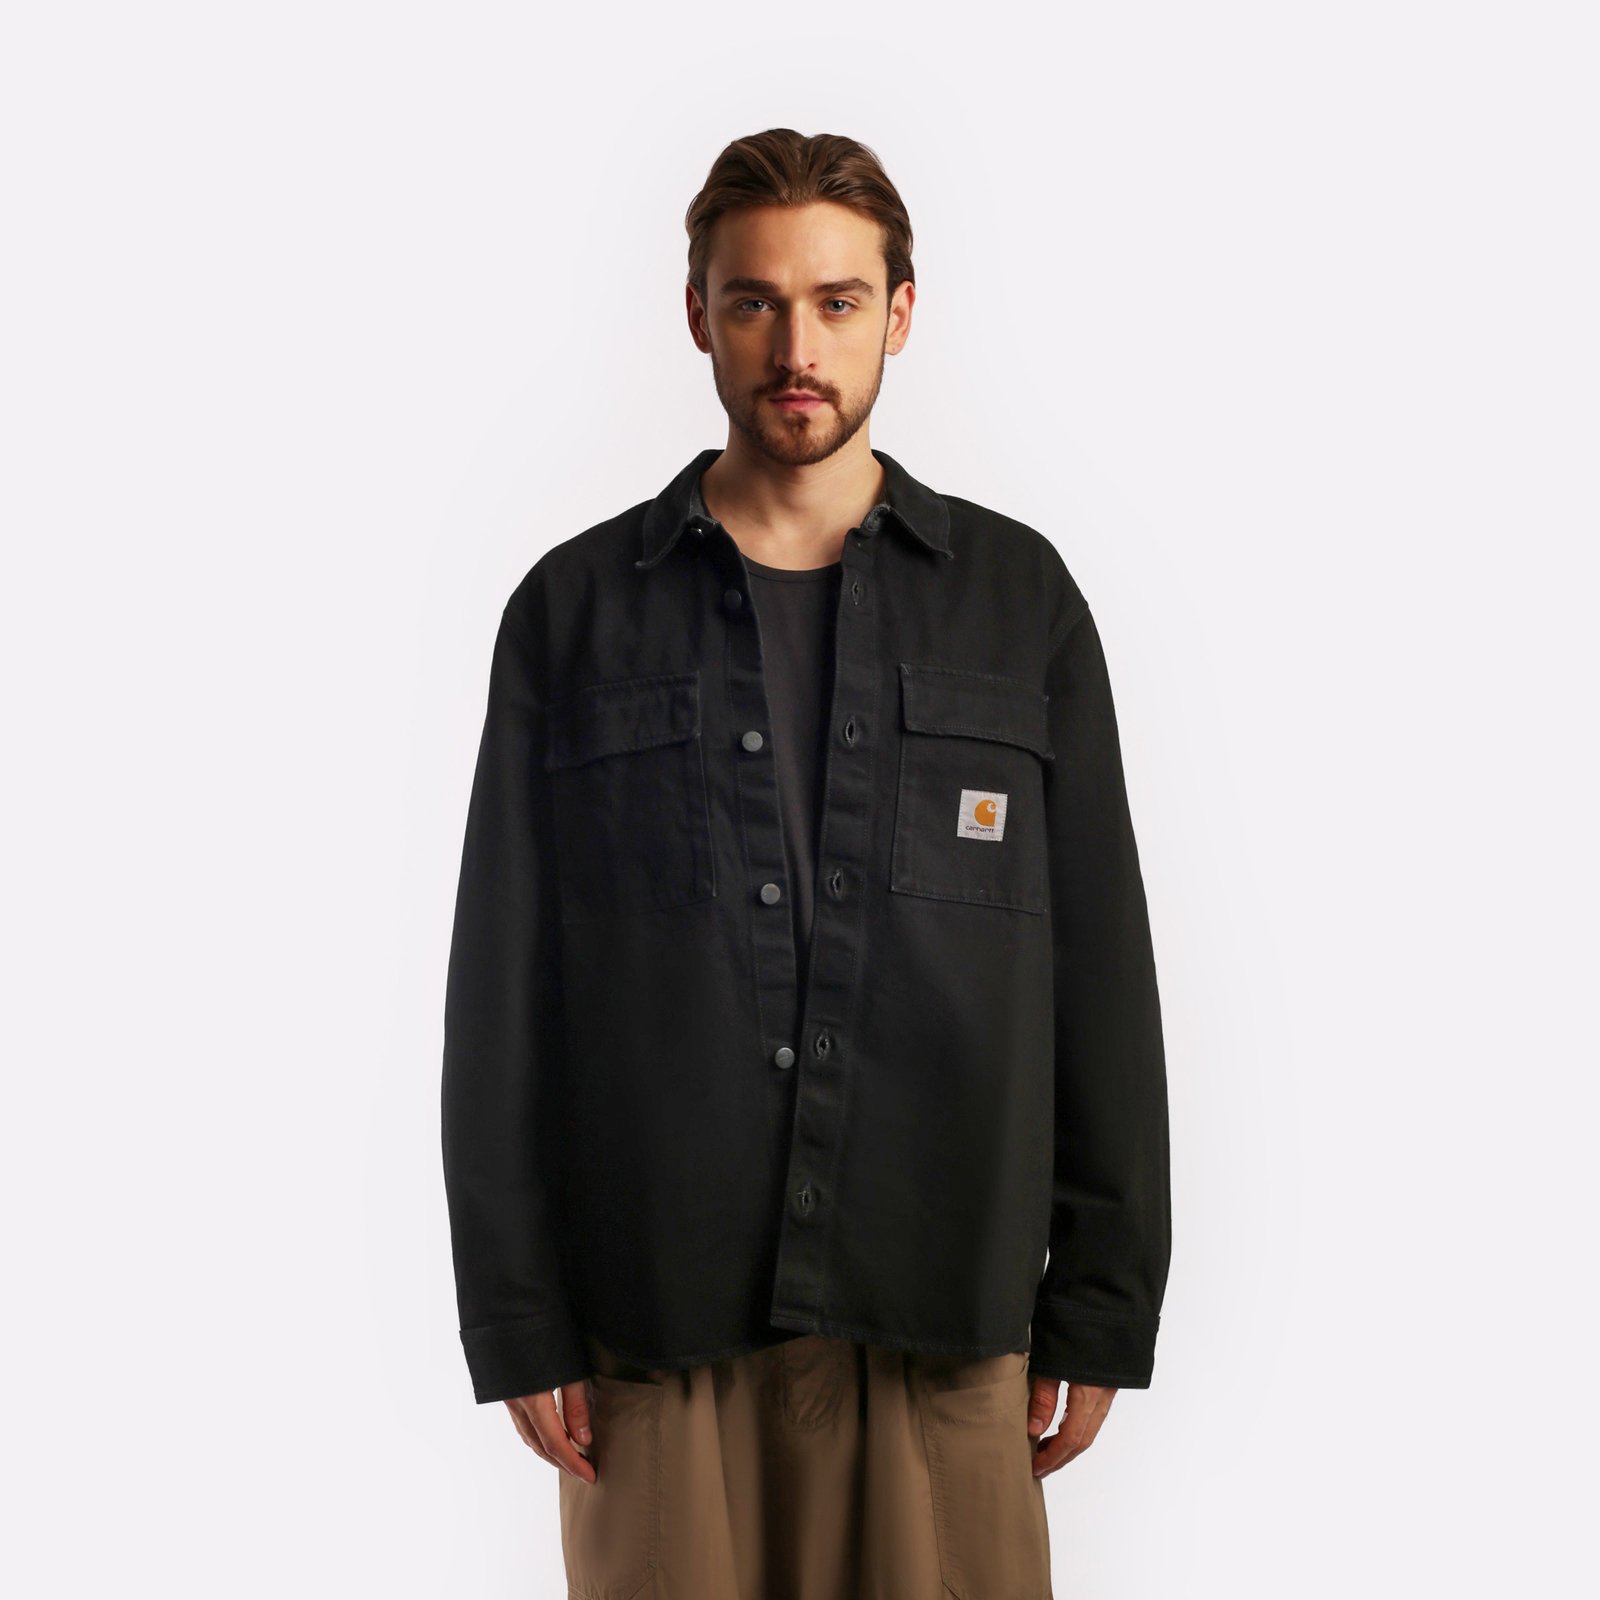 мужская куртка Carhartt WIP Manny Shirt Jac  (I032705-black)  - цена, описание, фото 1